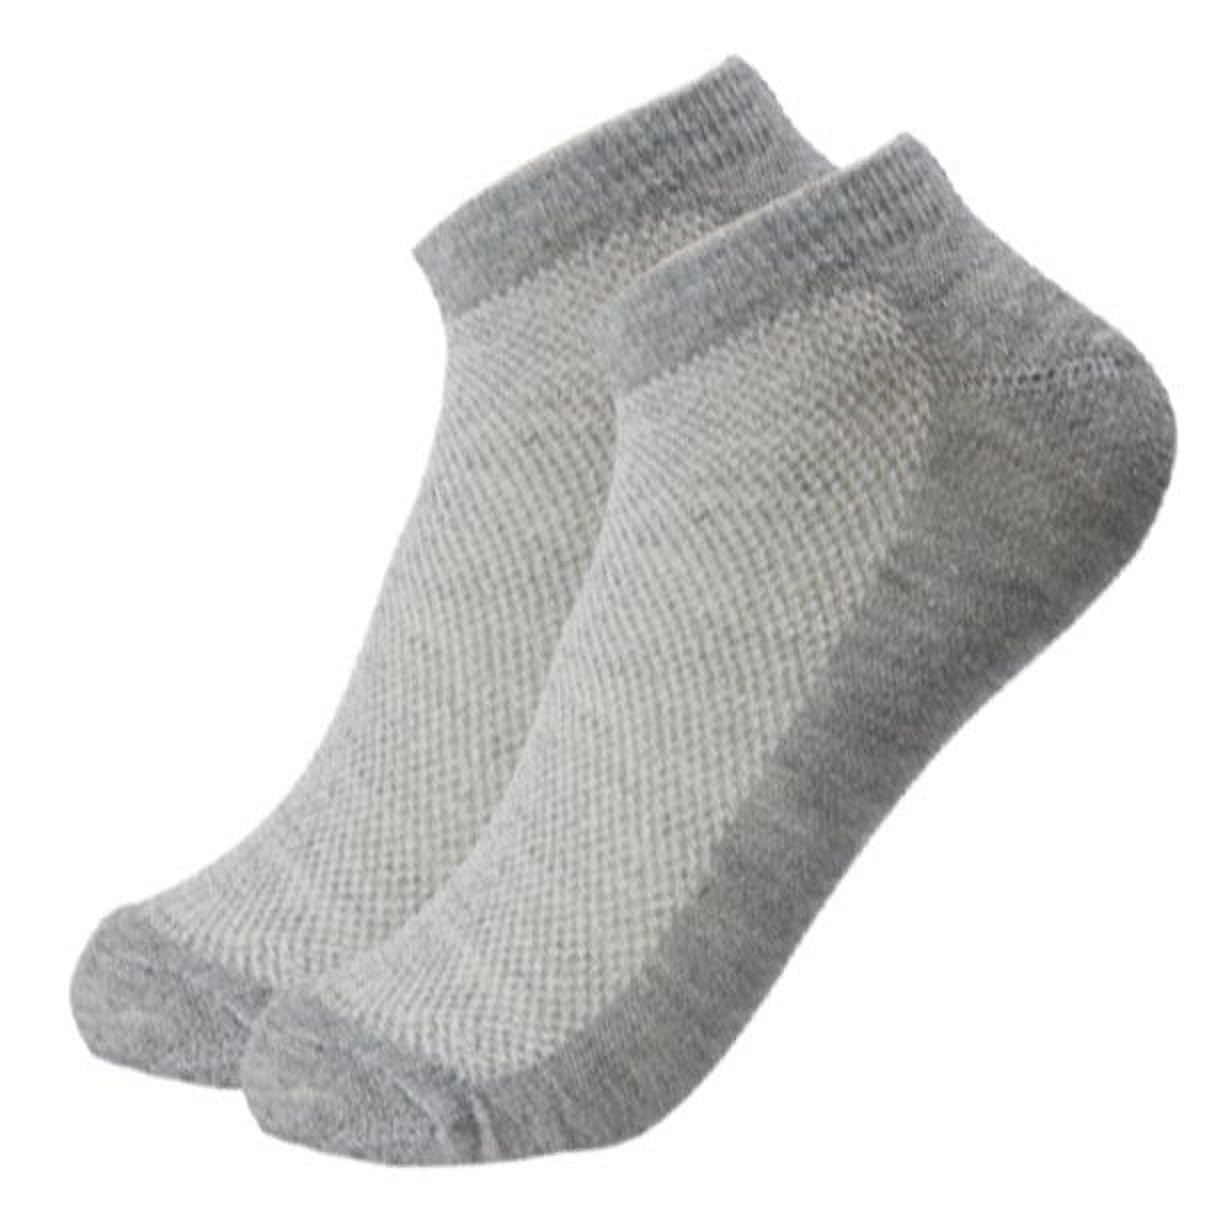 Mens Sport Socks - Mens Trainer, Ankle & Invisible Socks